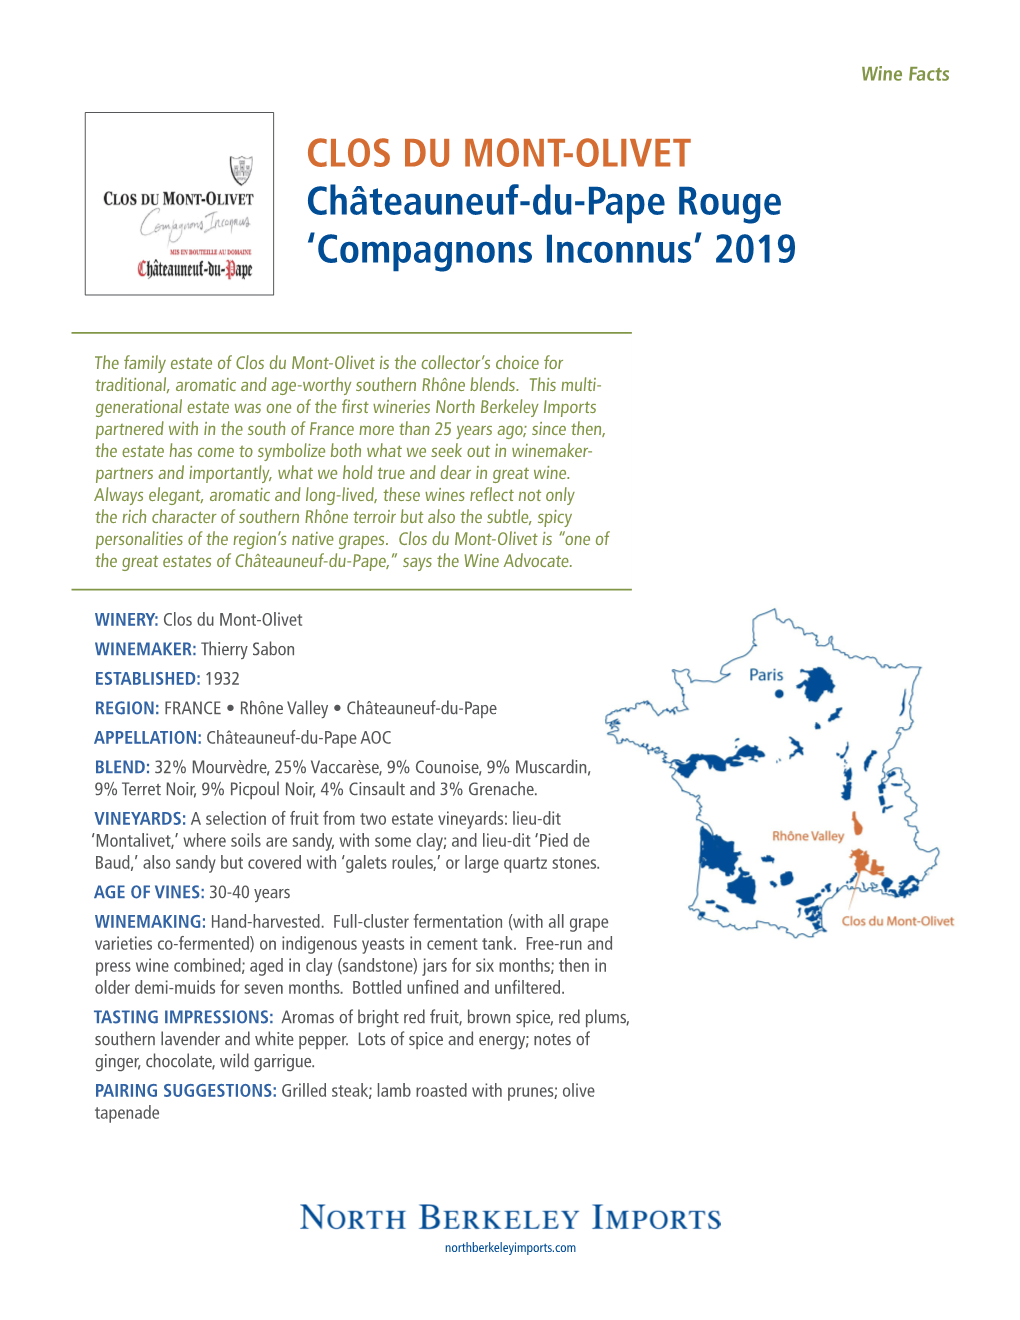 CLOS DU MONT-OLIVET Châteauneuf-Du-Pape Rouge ‘Compagnons Inconnus’ 2019